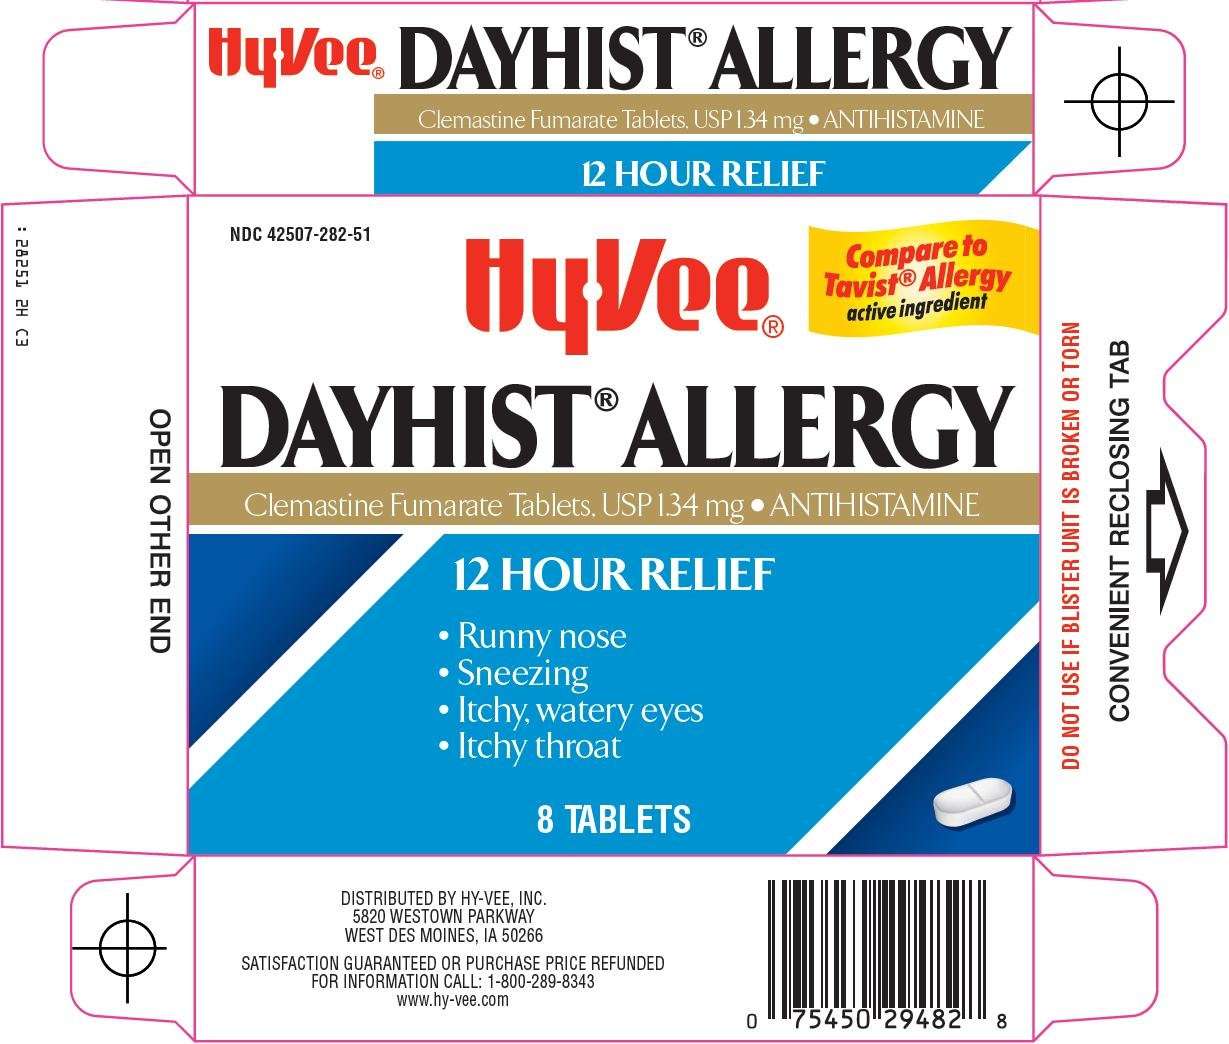 Dayhist allergy